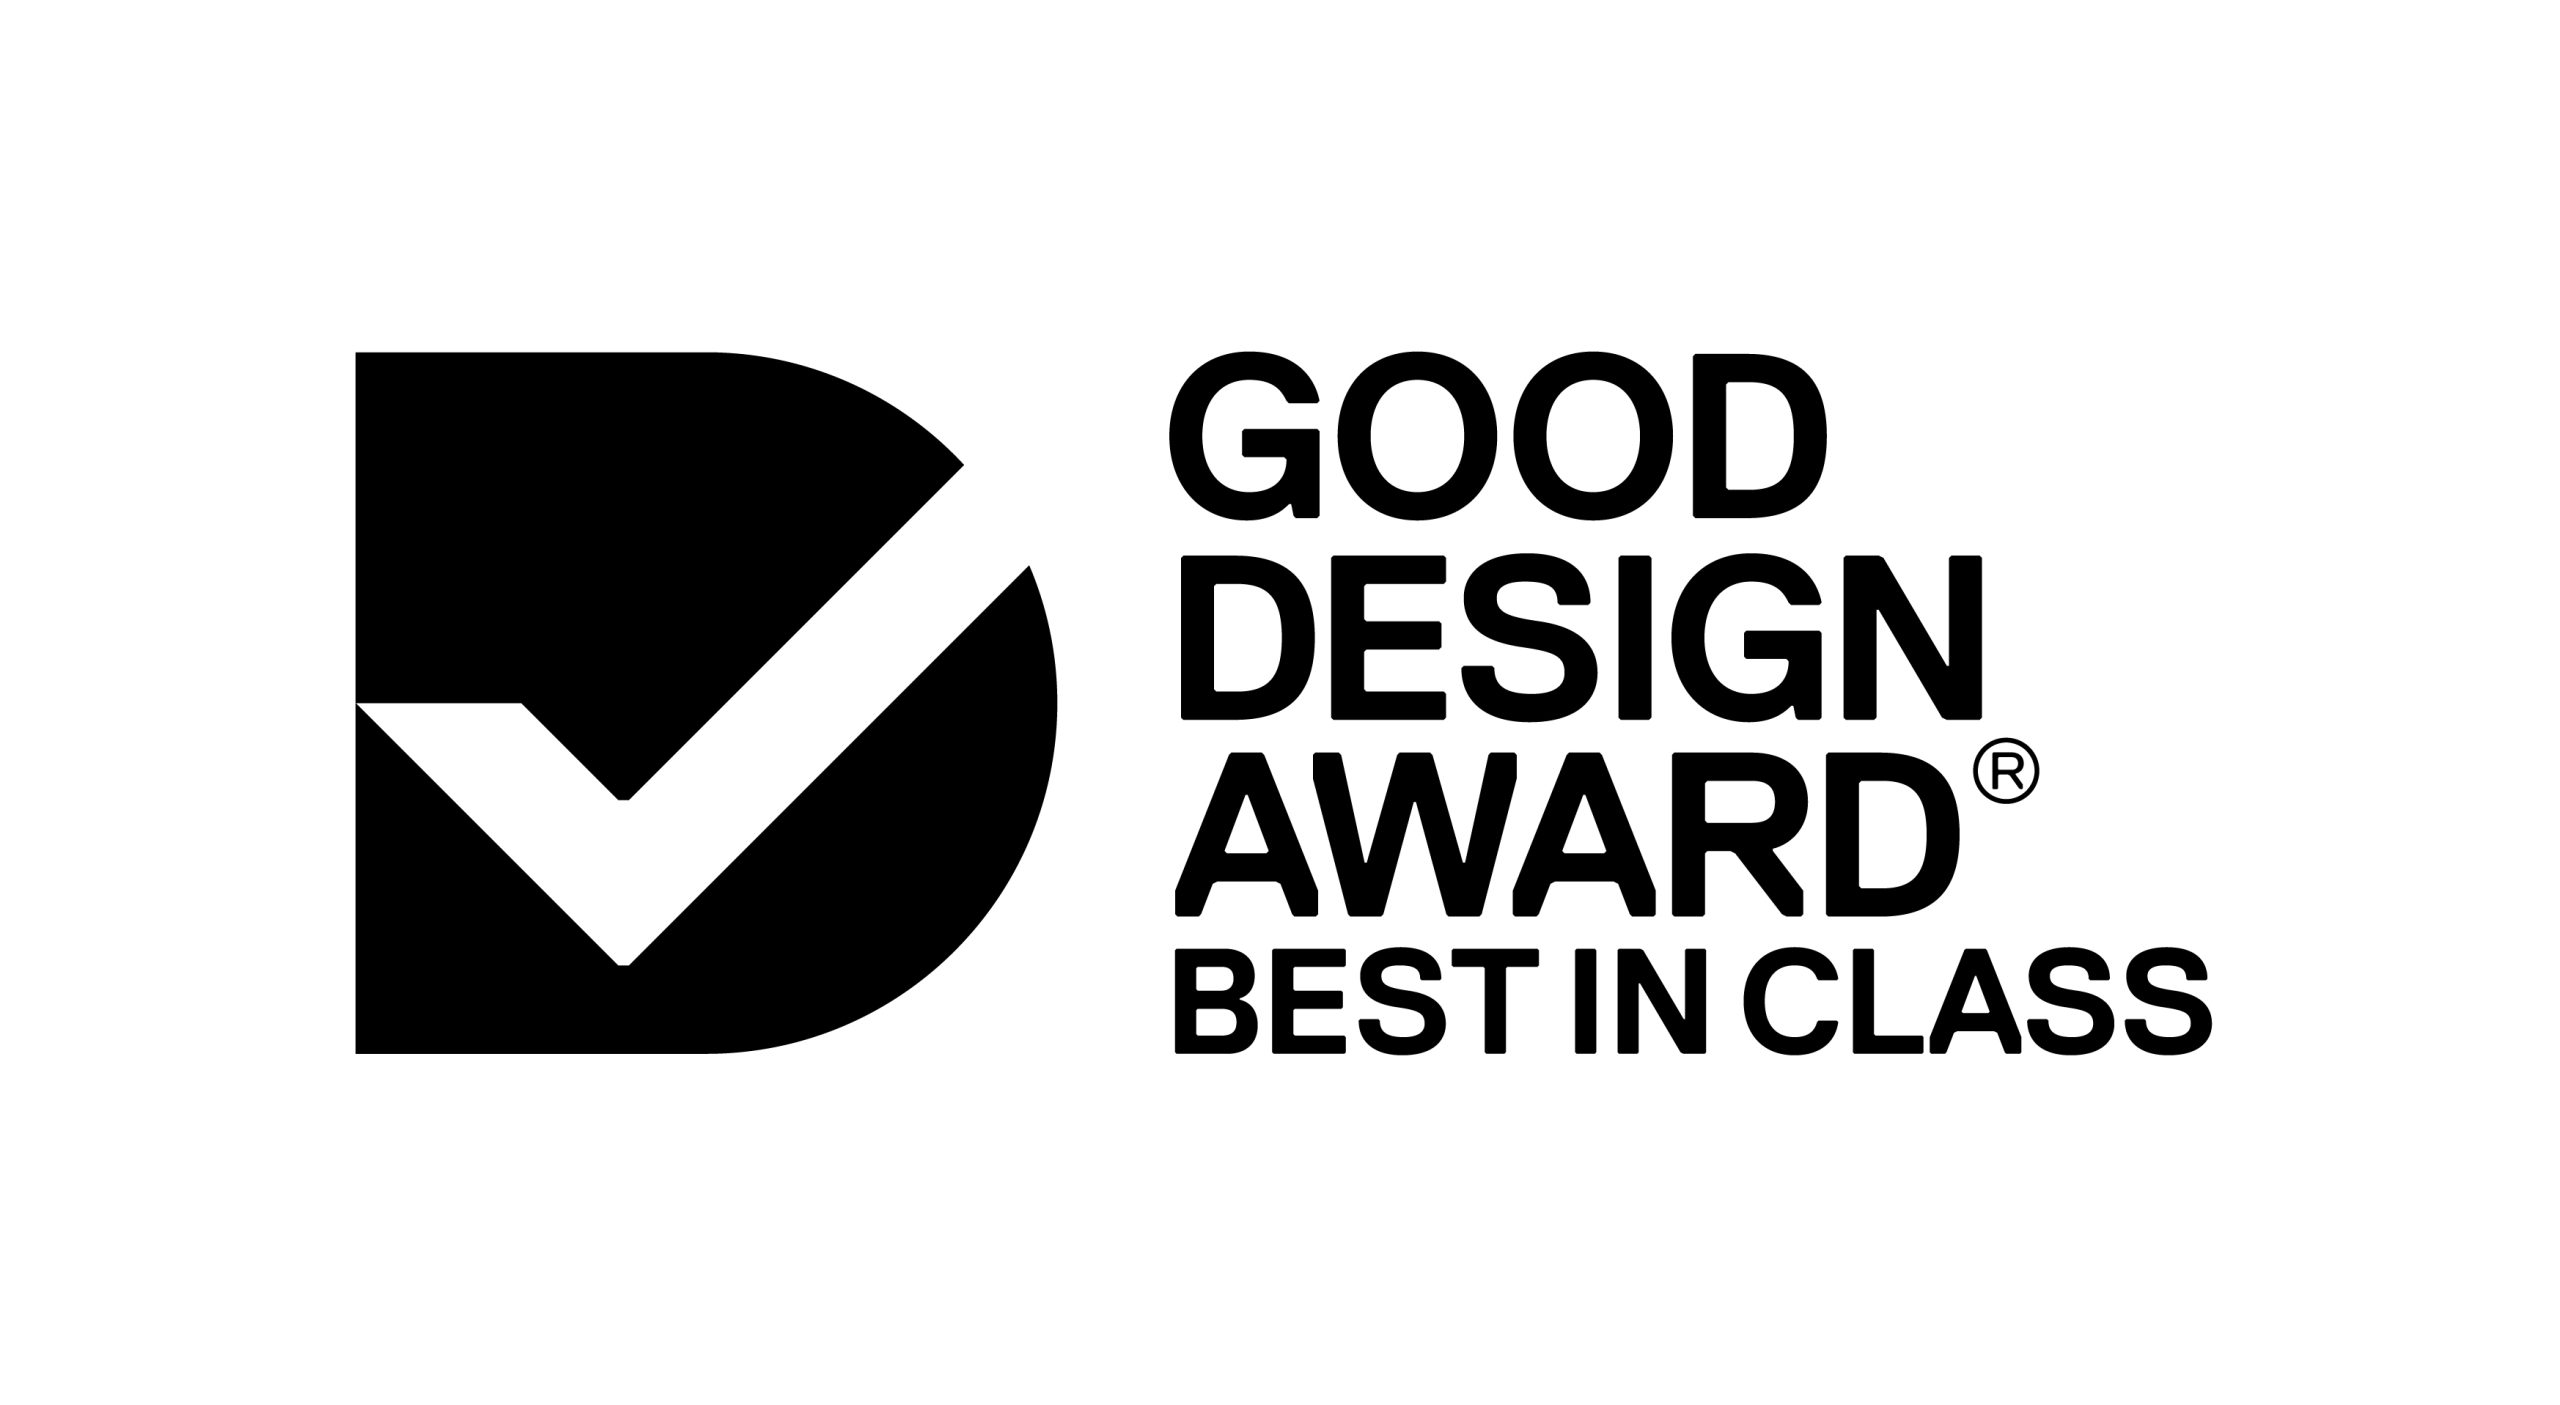 Good Design Award_Best in Class_CMYK_BLK_Logo